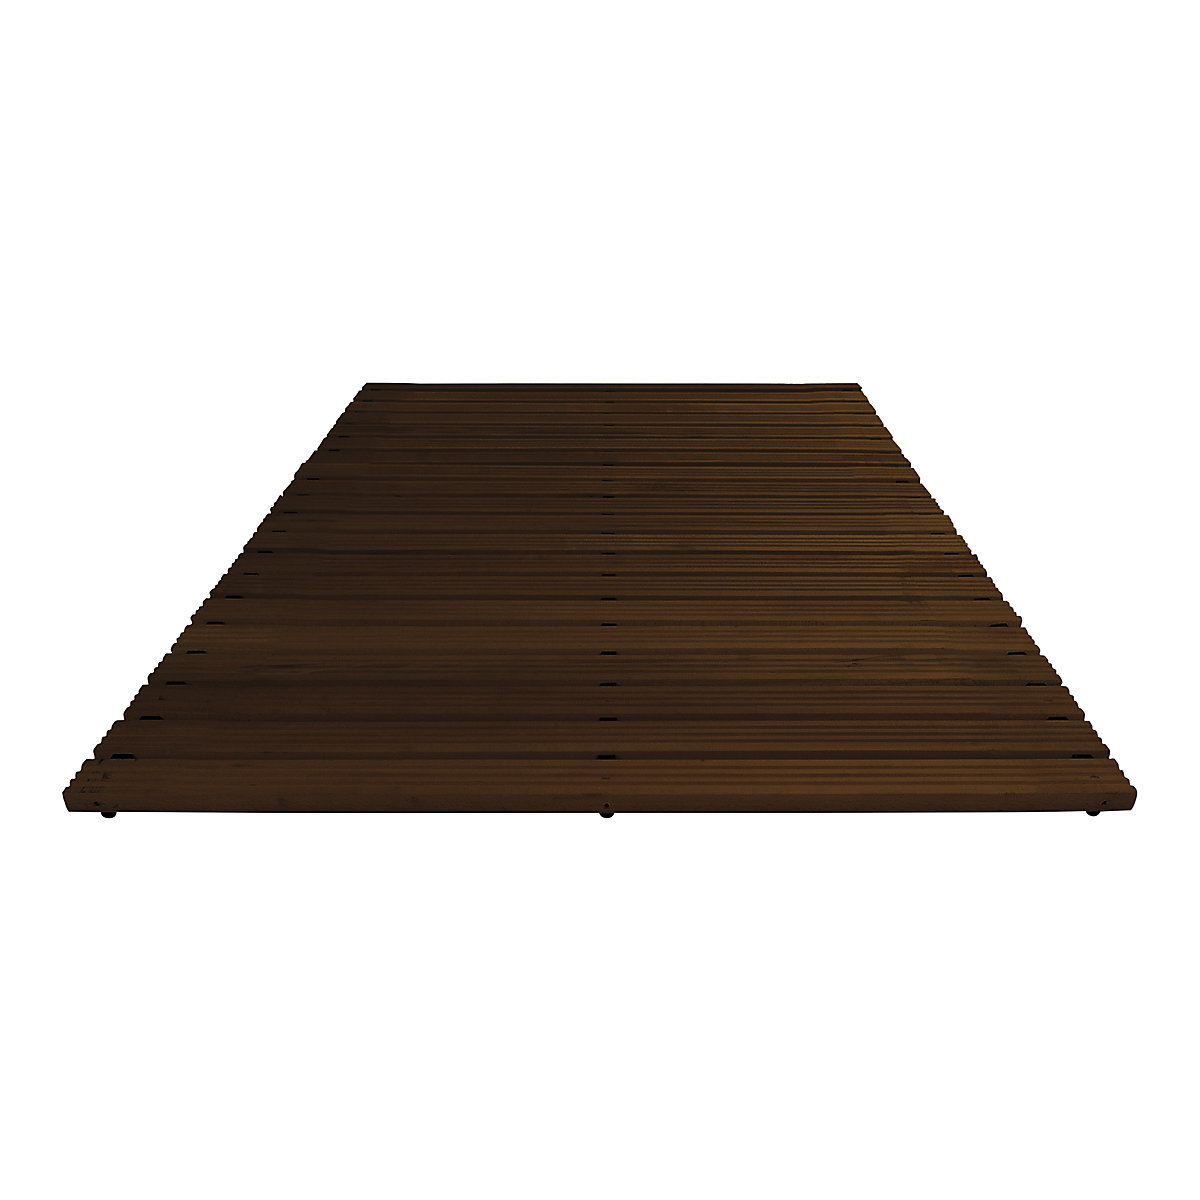 Pasarela de madera con barnizado oscuro, por metro lineal, sin biselado, anchura 1200 mm